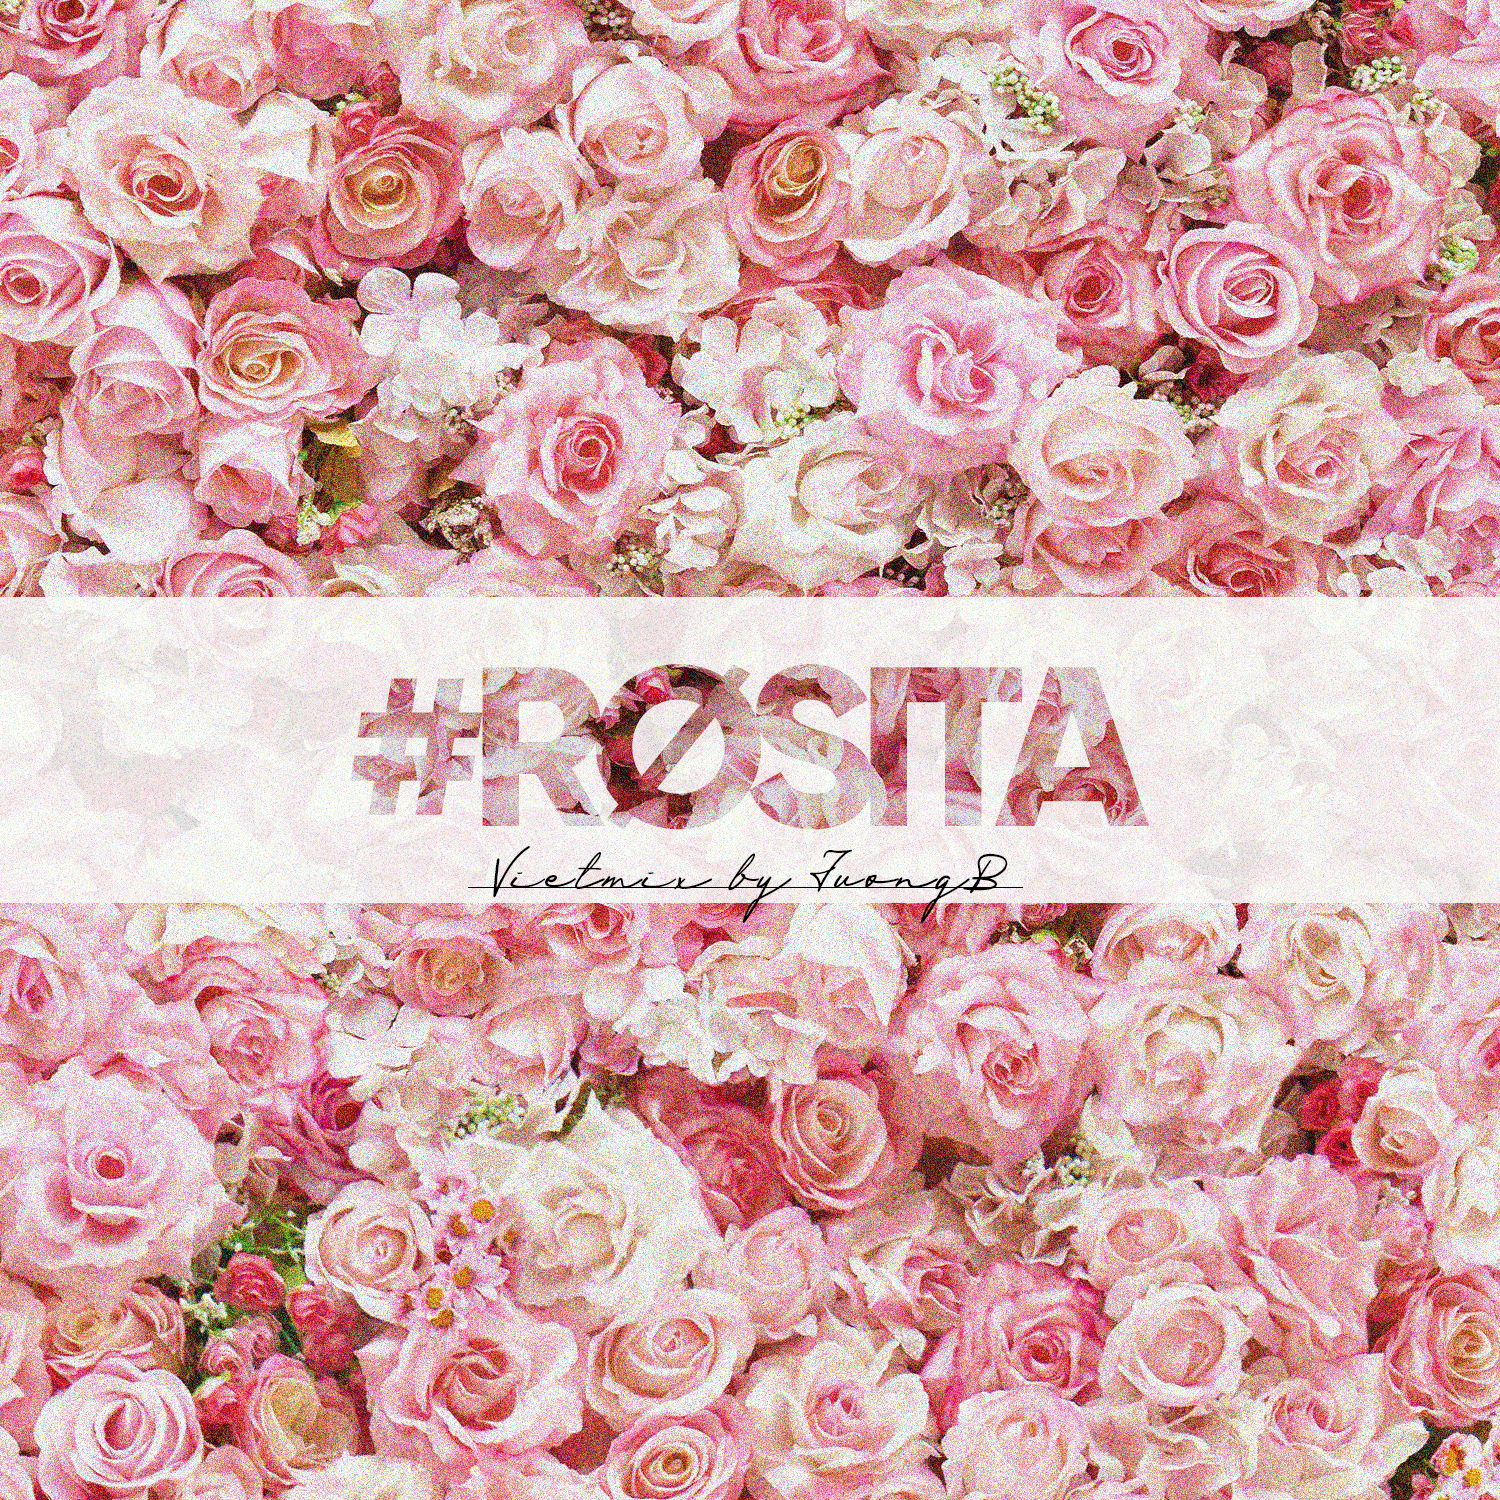 ダウンロード #Rosita - Vietmix By JuongB